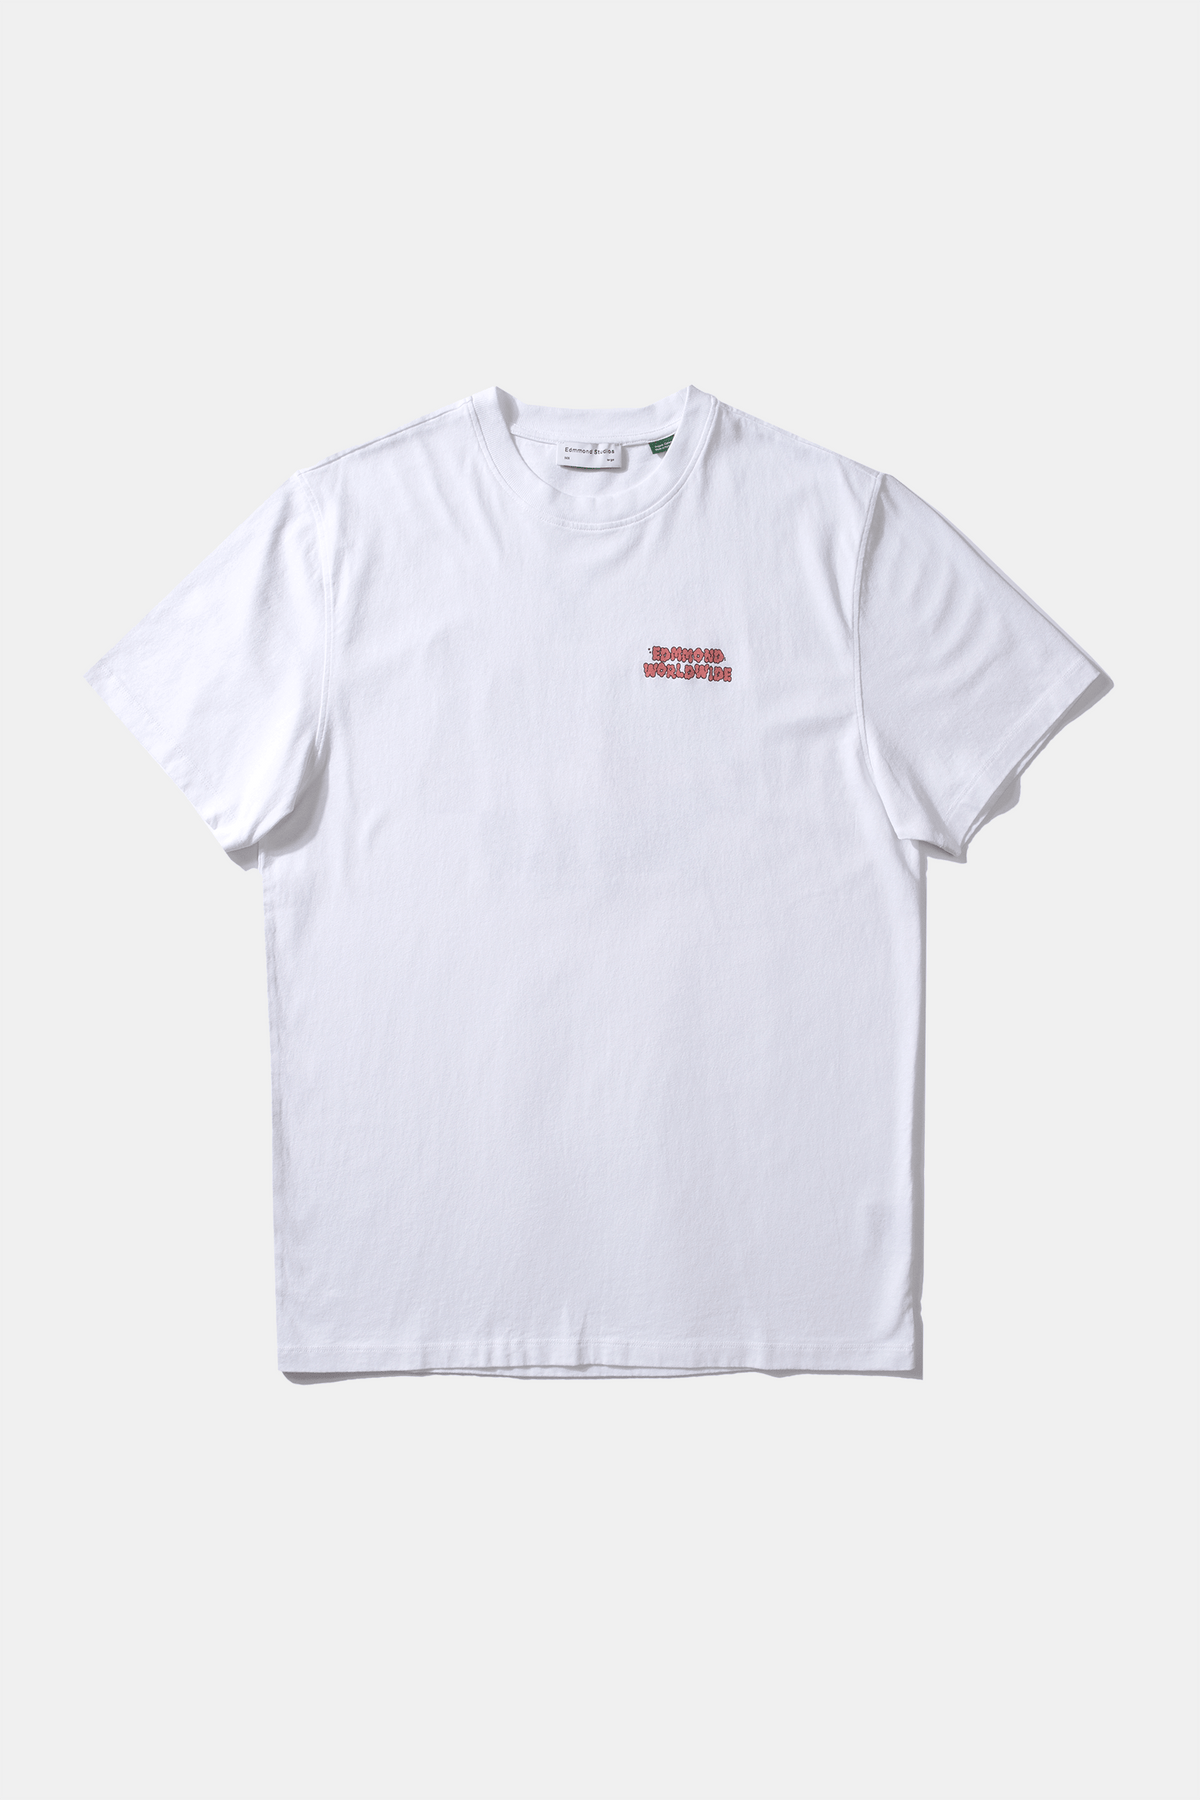 Yaggo T-Shirt Plain White